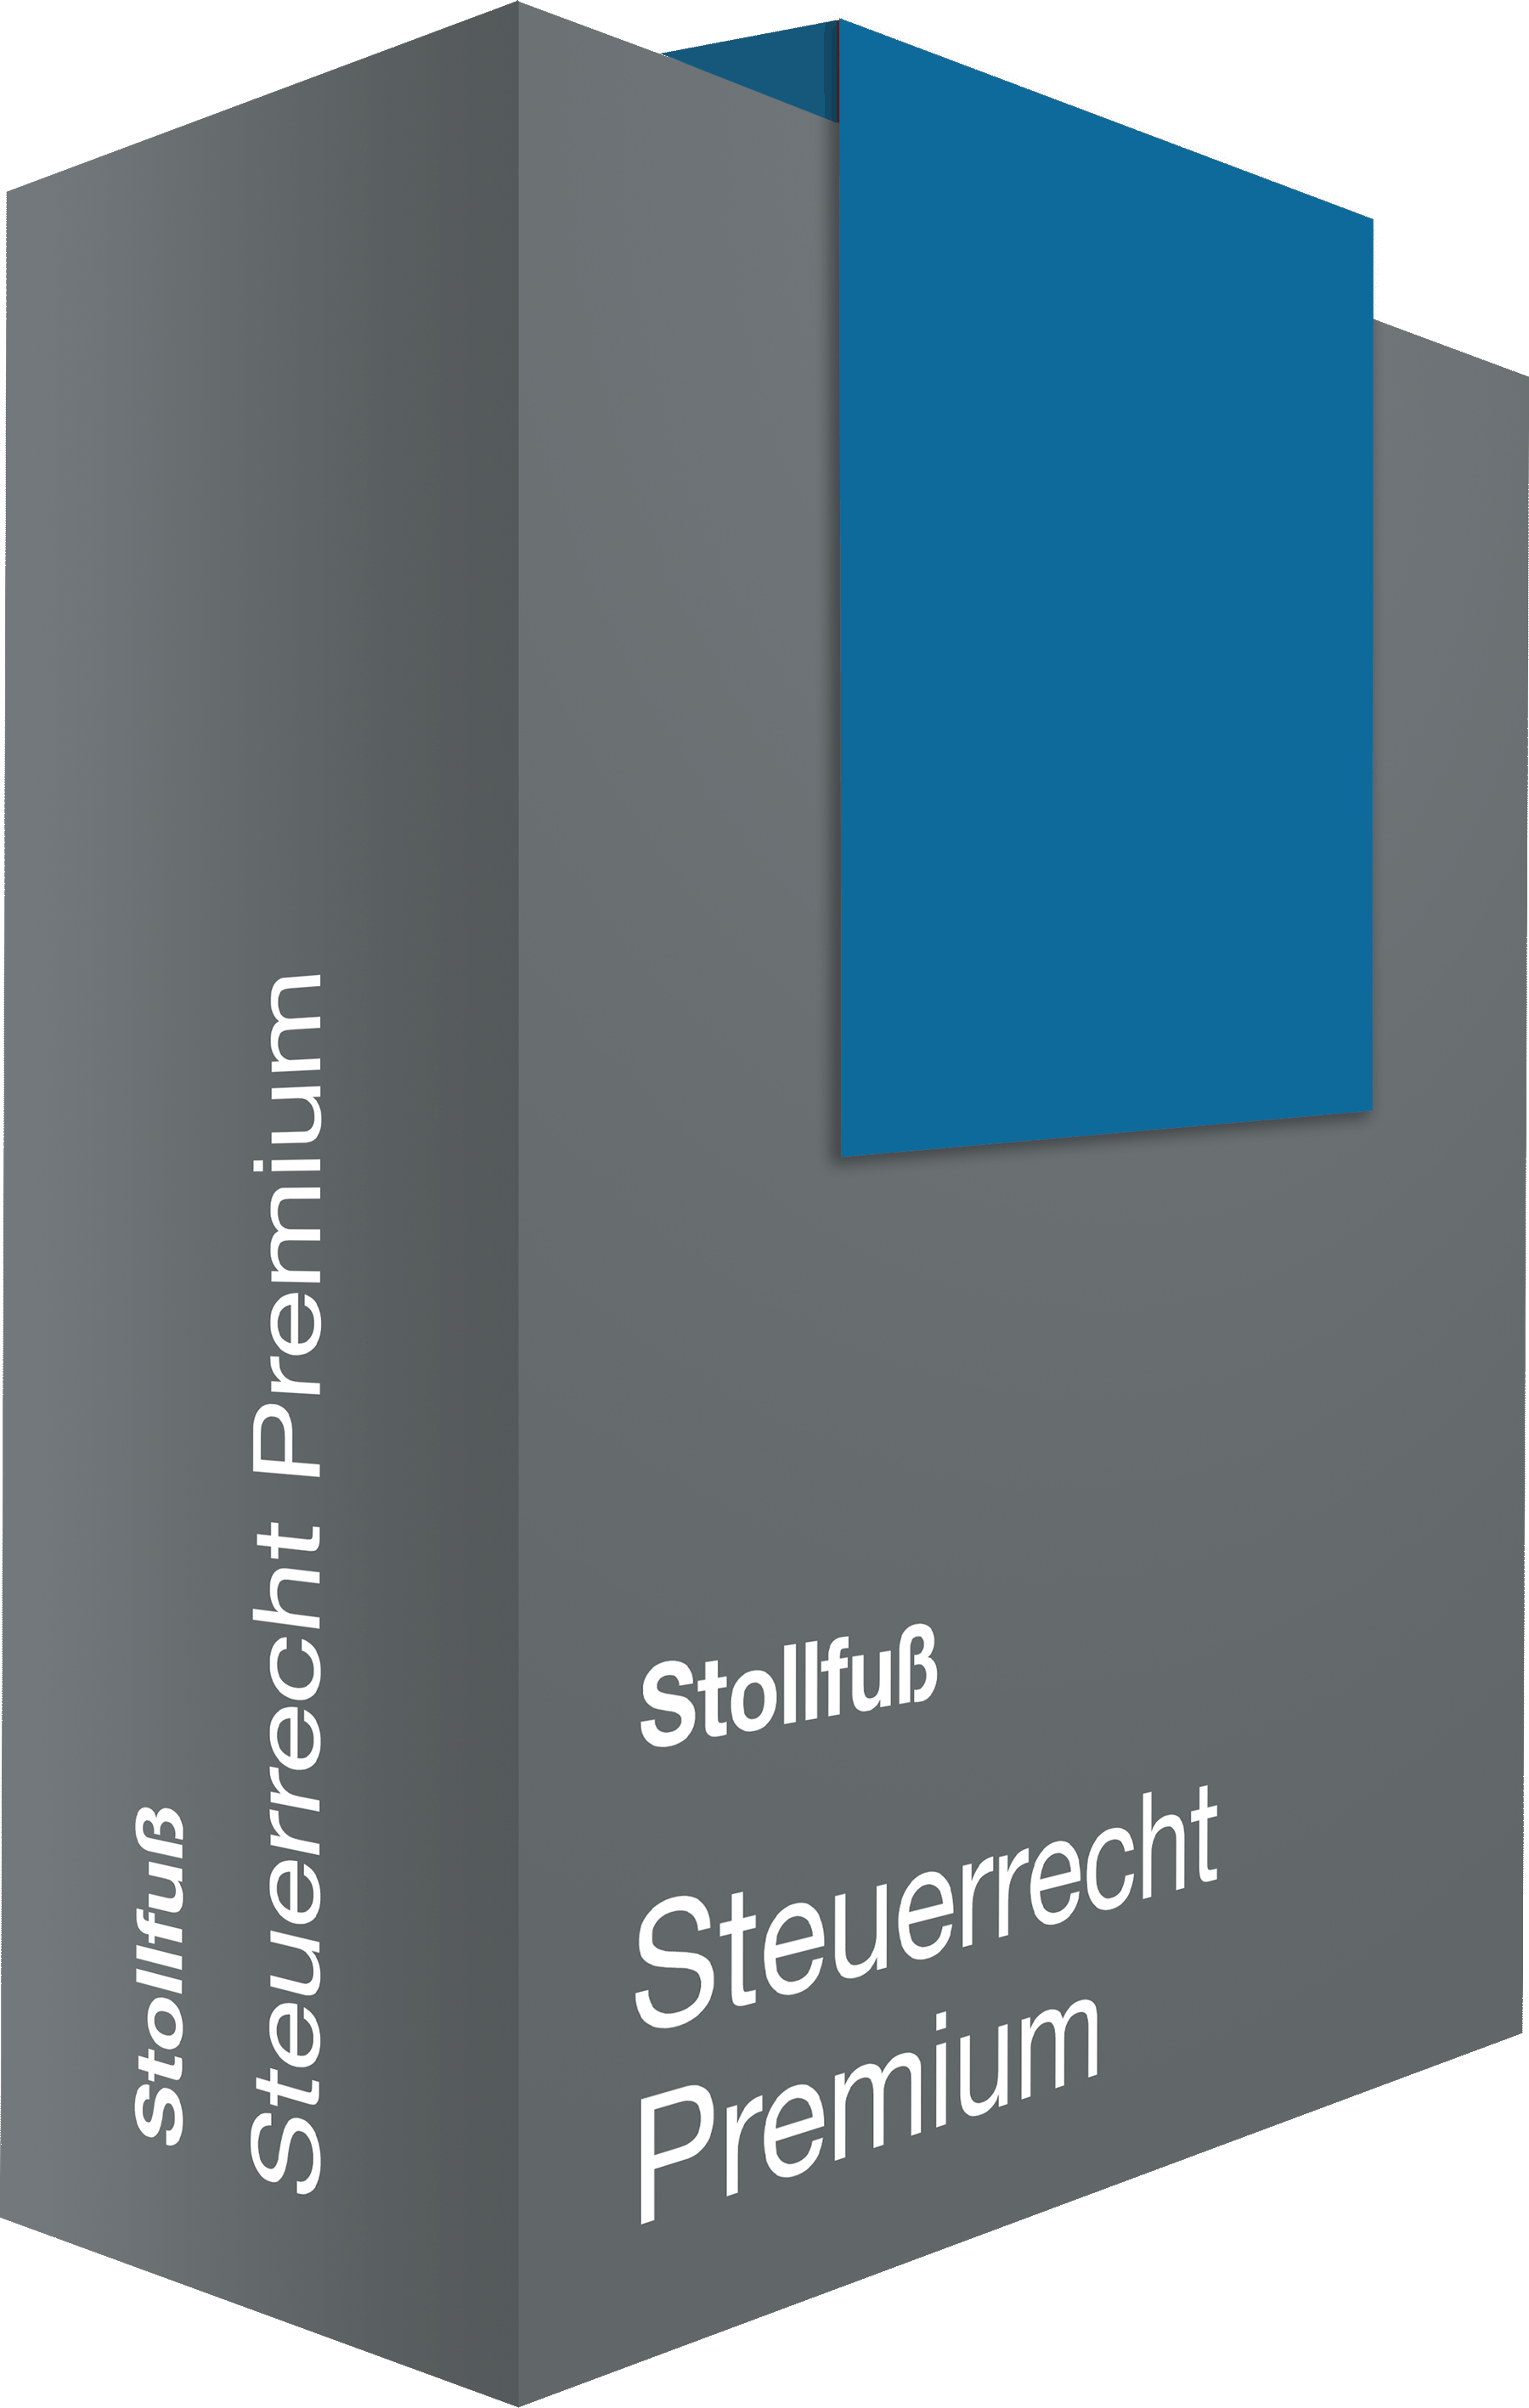 Das Bild zeigt das Icon der Steuerberater Datenbank Stollfuß Steuerrecht Premium.